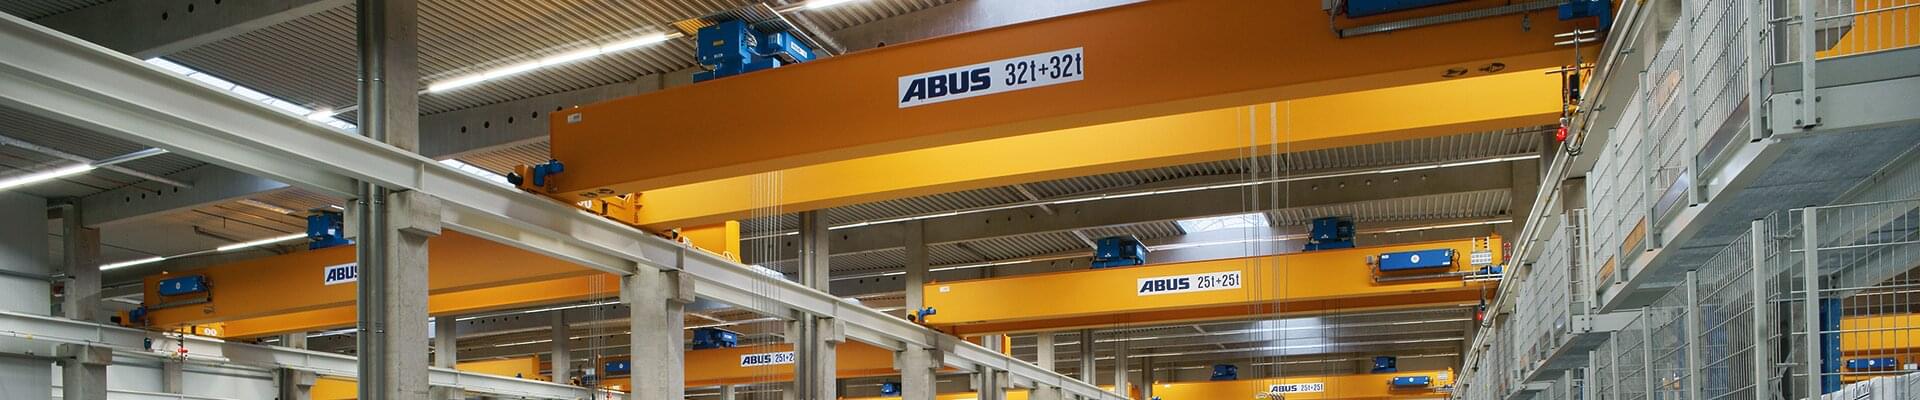 ABUS Krane in Unternehmen für Schneid- und Wickeltechnik 